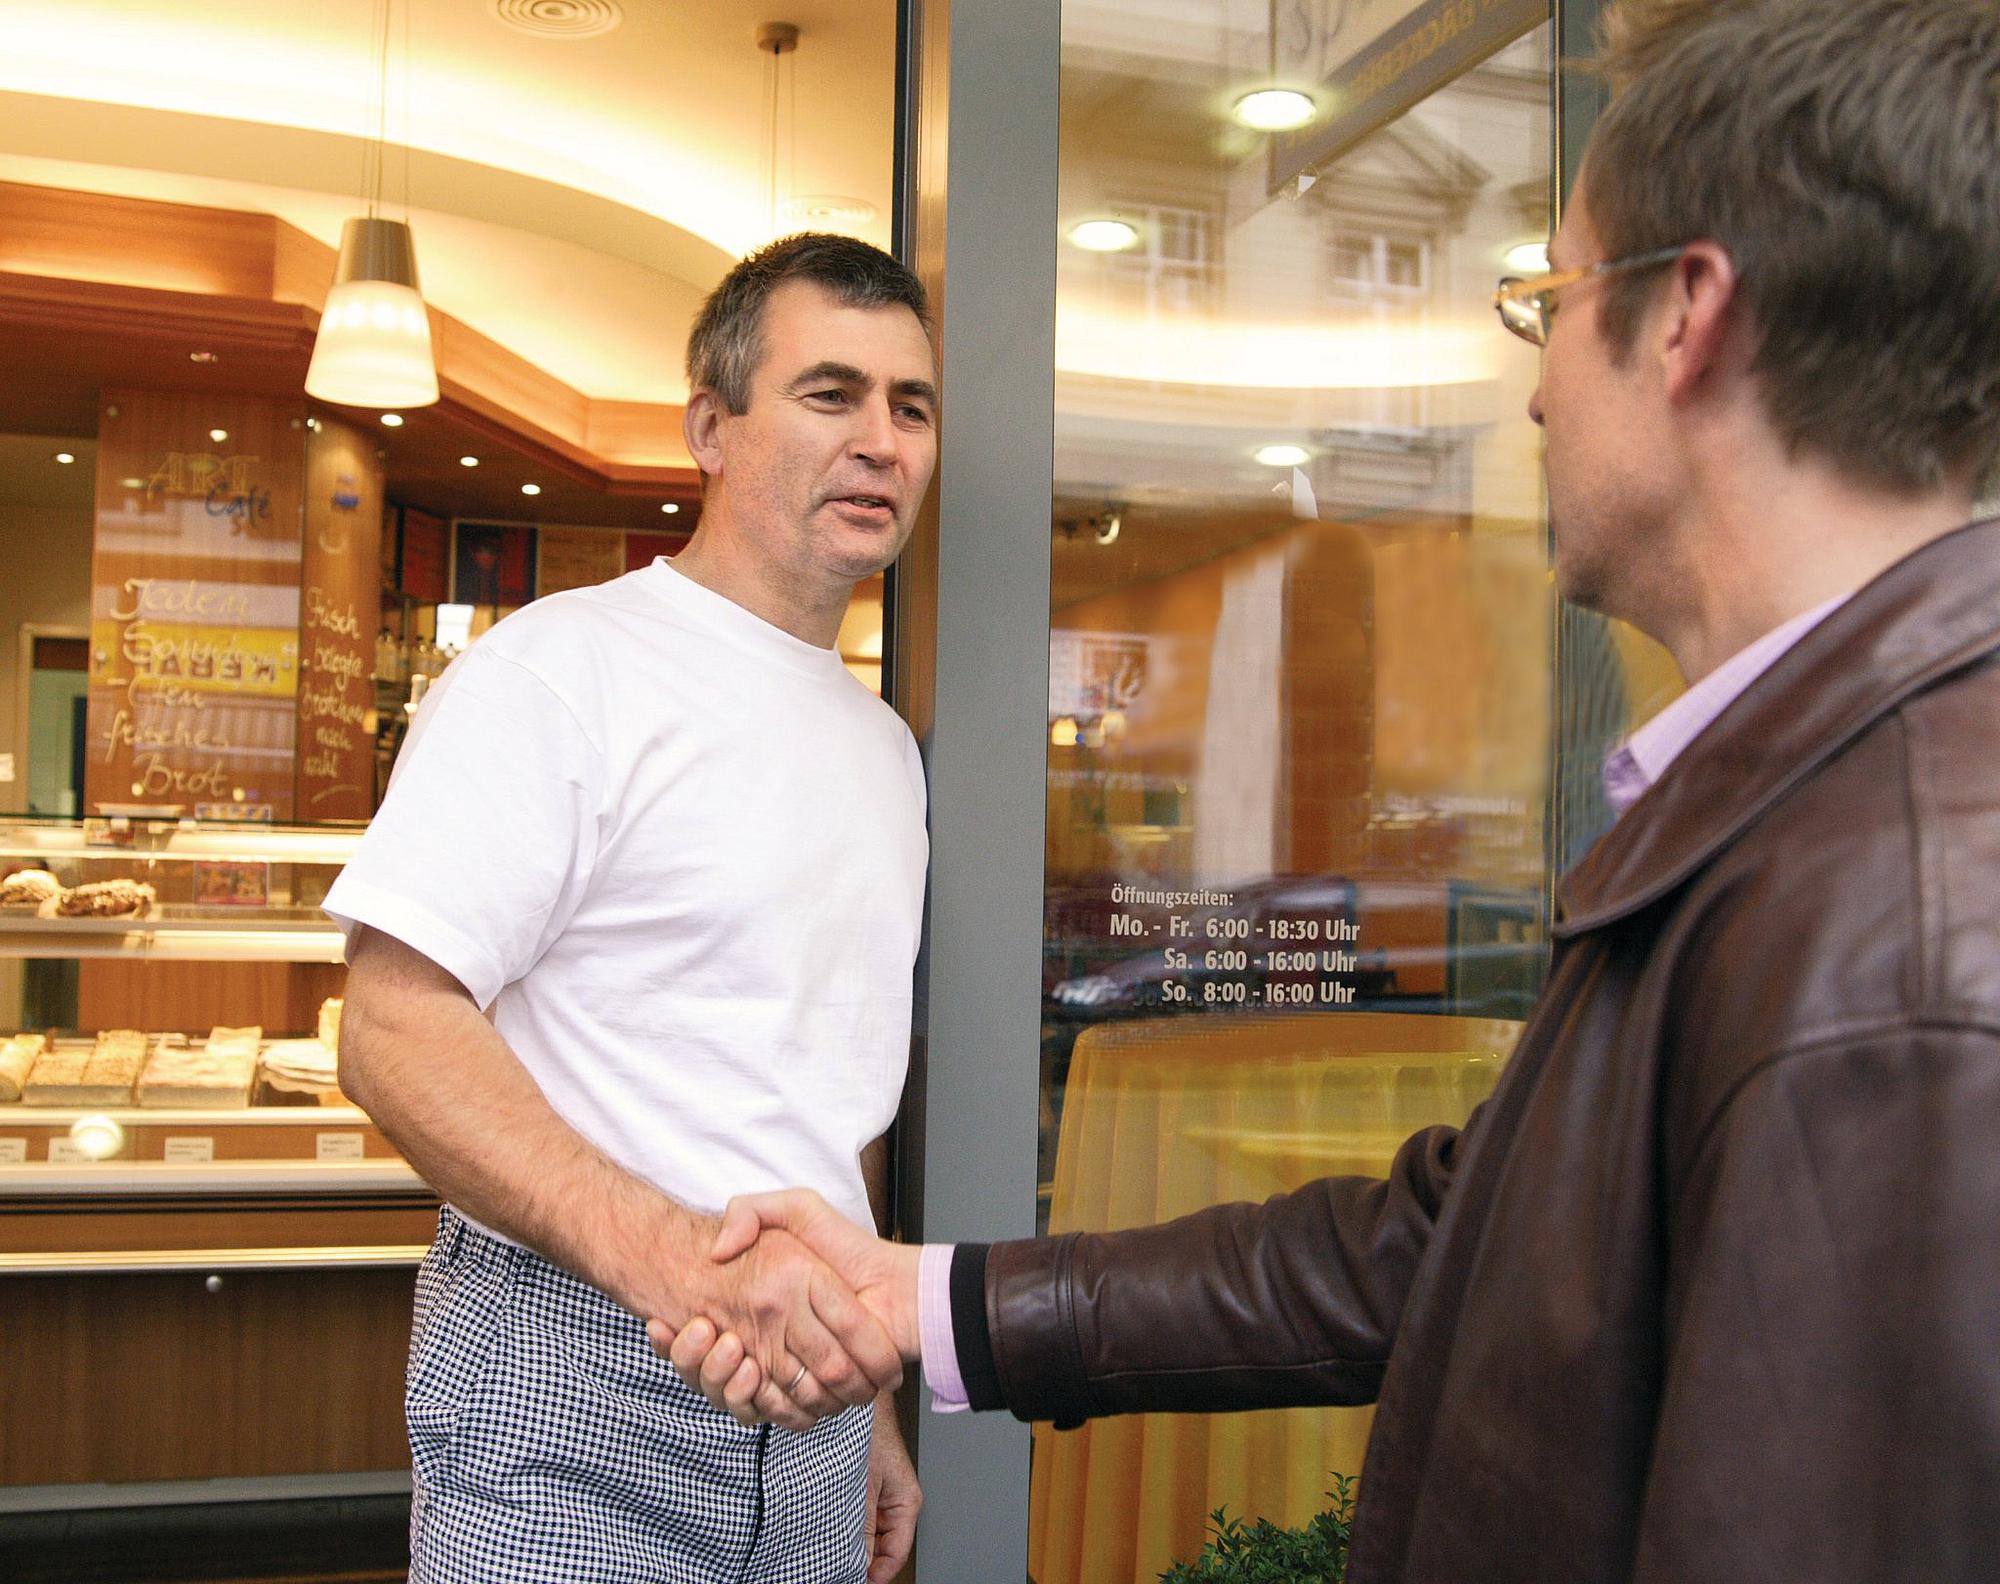 Eine Aufsichtsperson begrüßt den Inhaber einer Bäckerei